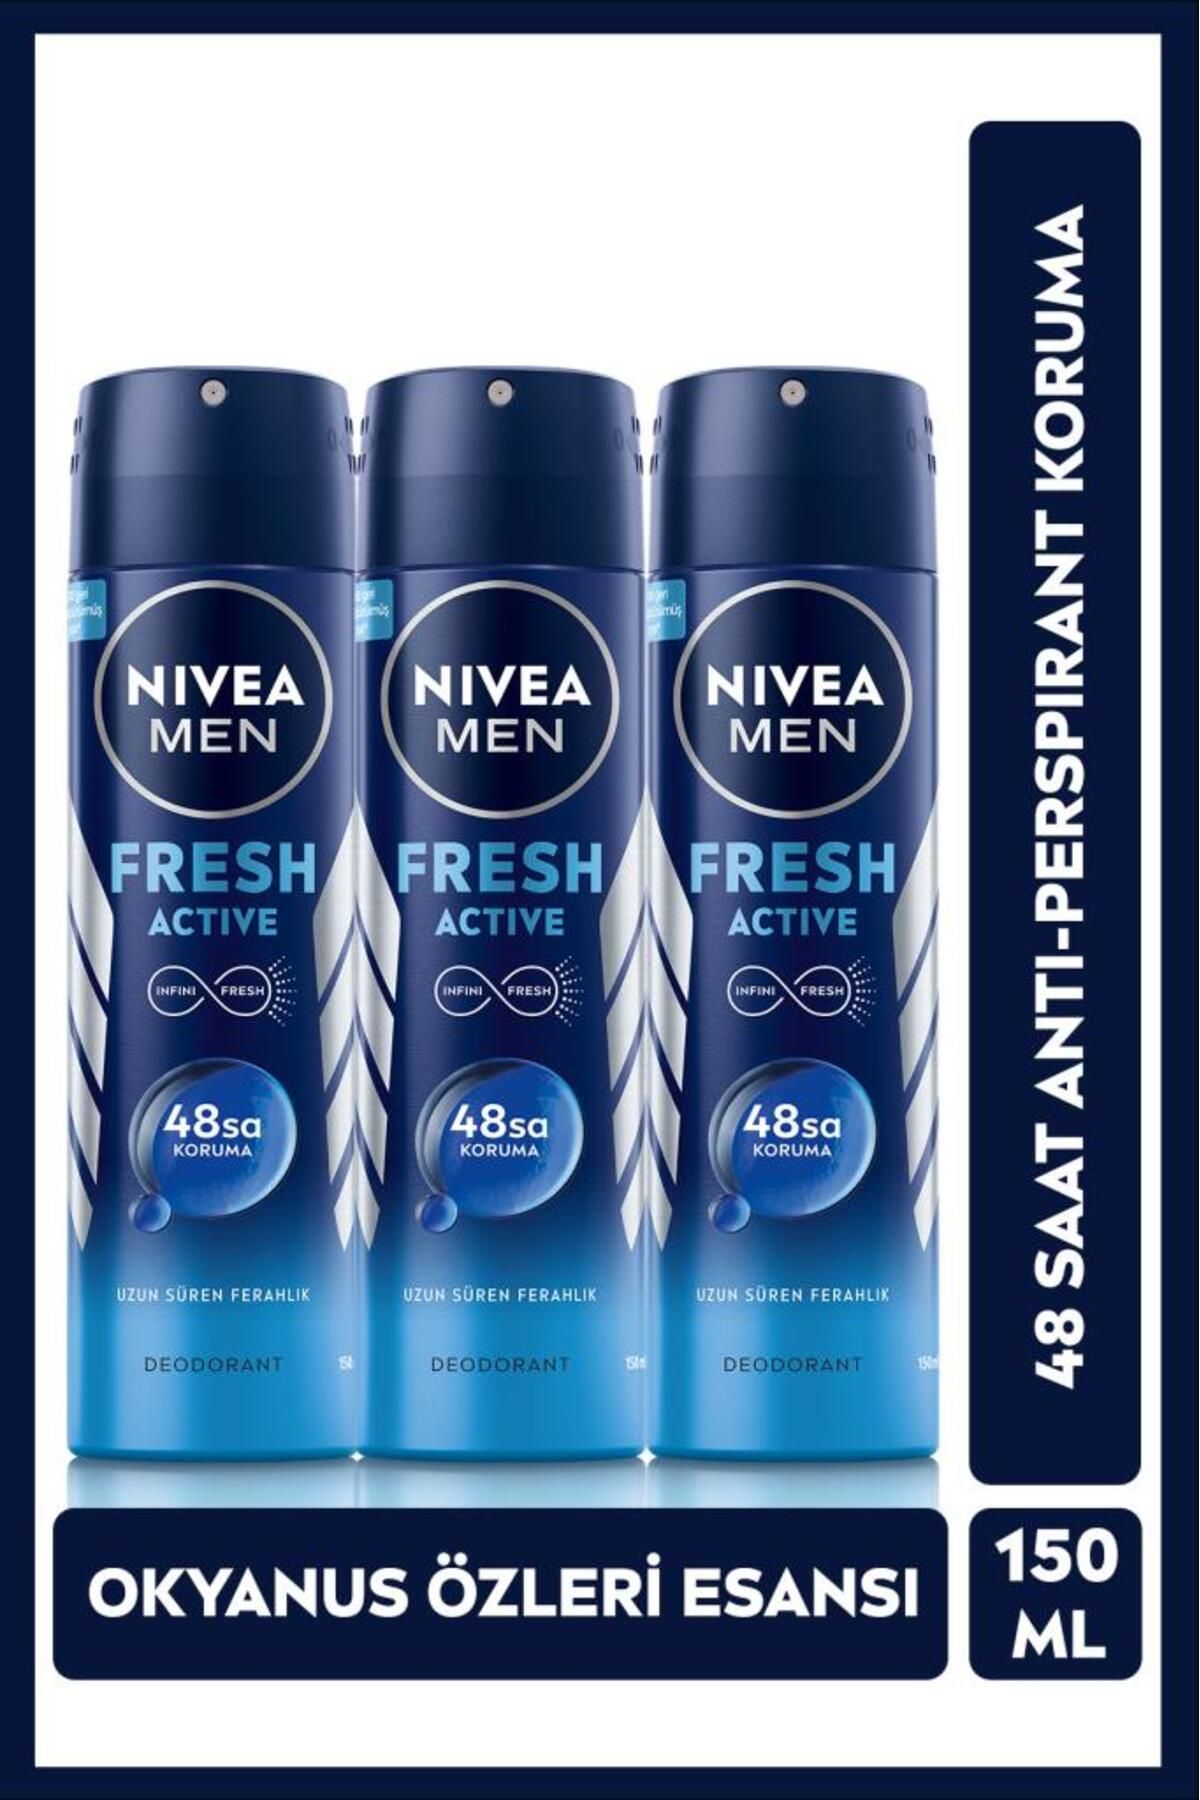 NIVEA MEN Erkek Sprey Deodorant Fresh Active, 48 Saat Koruma, 150ml x3 Adet